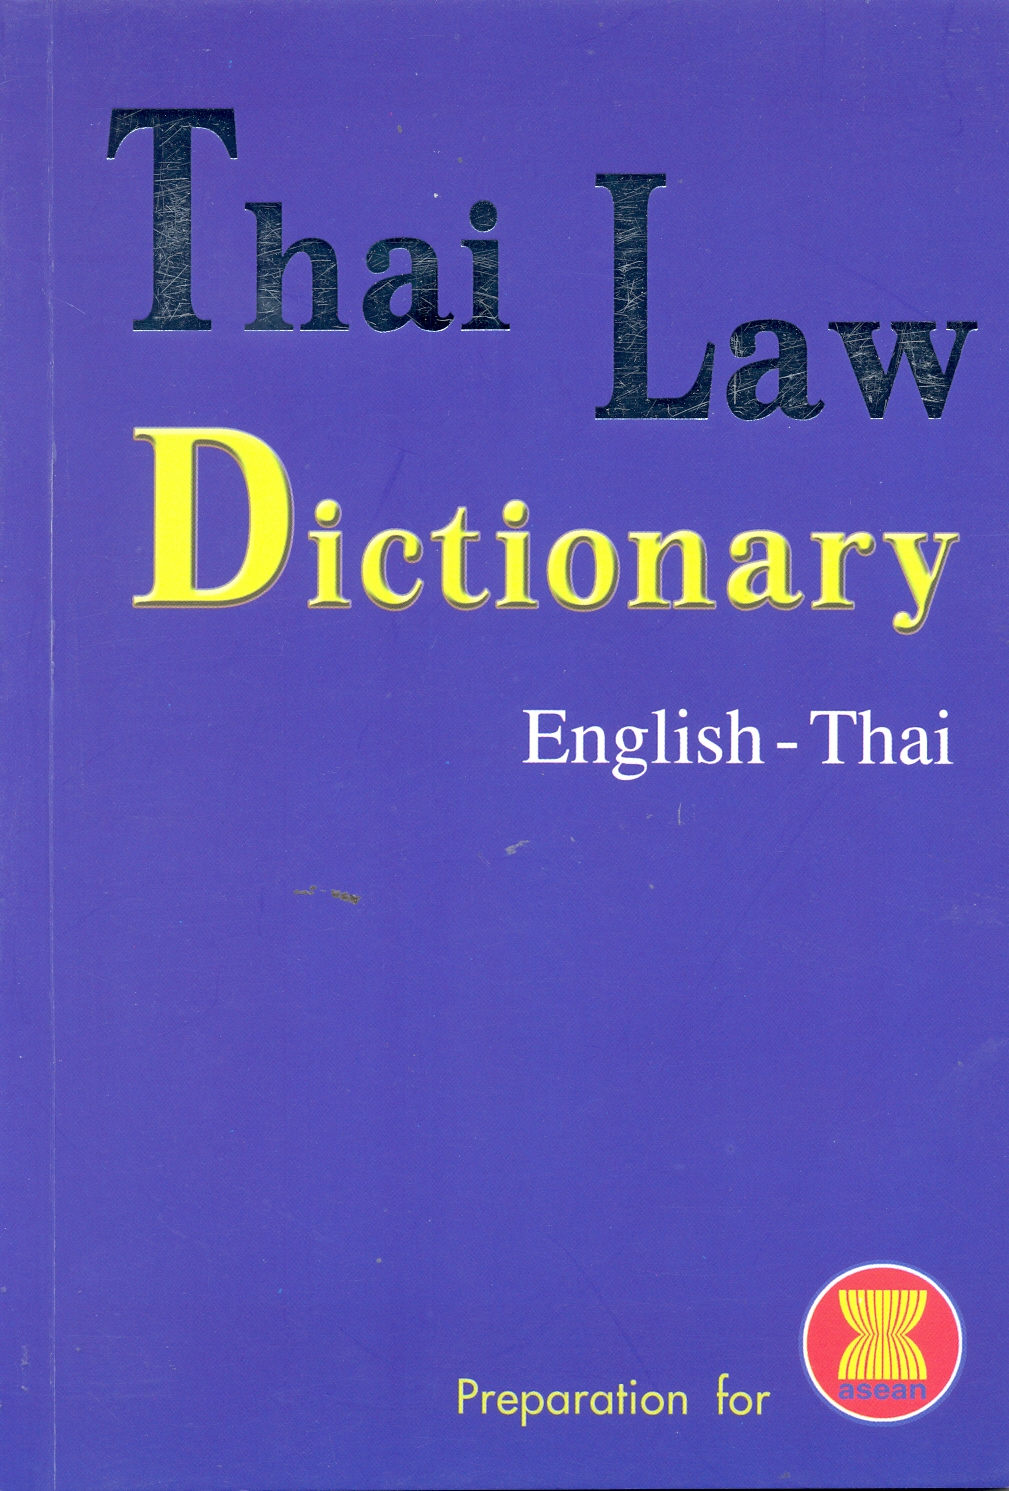 Thai law dictionary English - Thai 